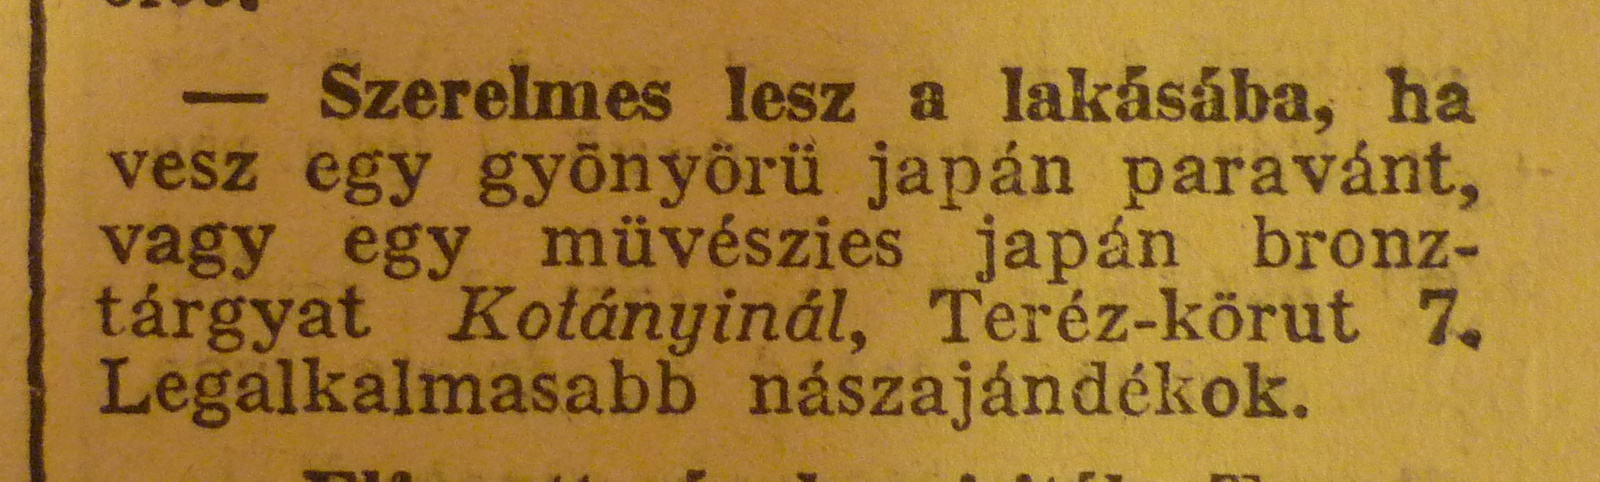 TerezKorut7-1913Junius-AzEstHirdetes